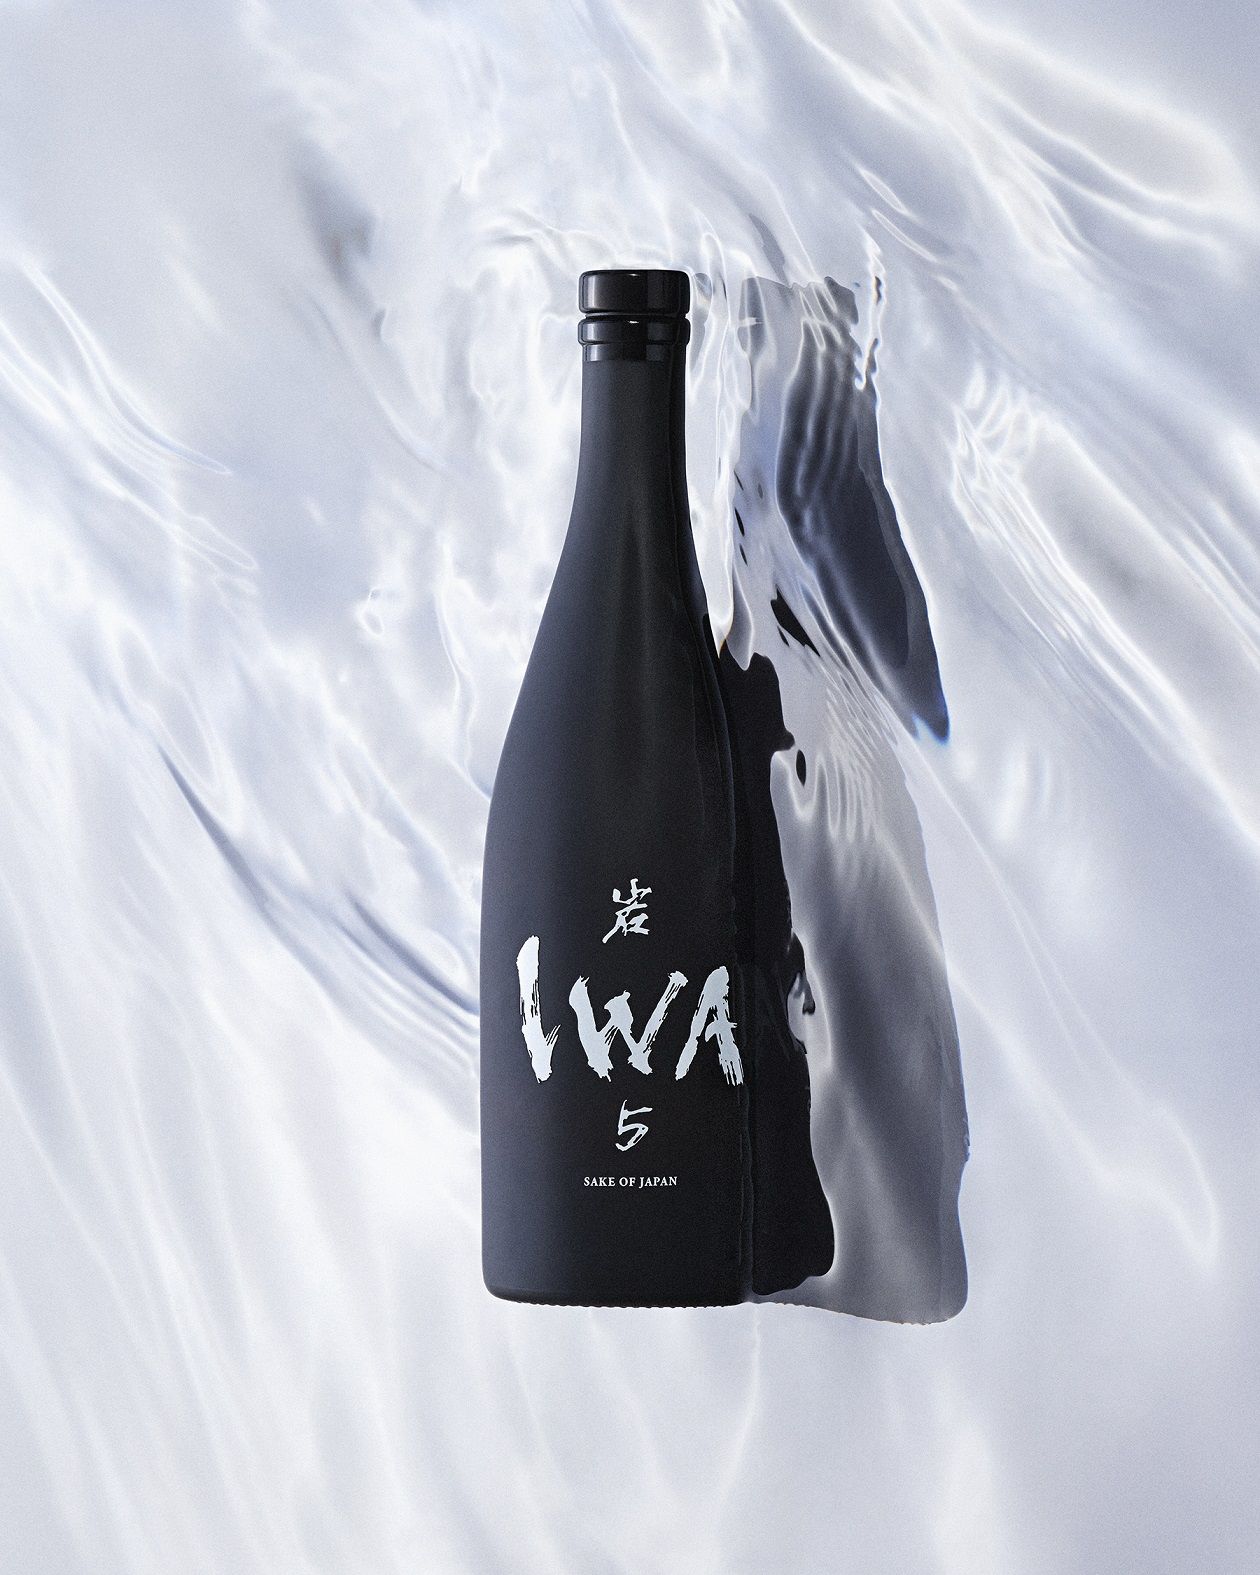 ファン垂涎！ 伝説のシャンパーニュ醸造家による日本酒「IWA 5